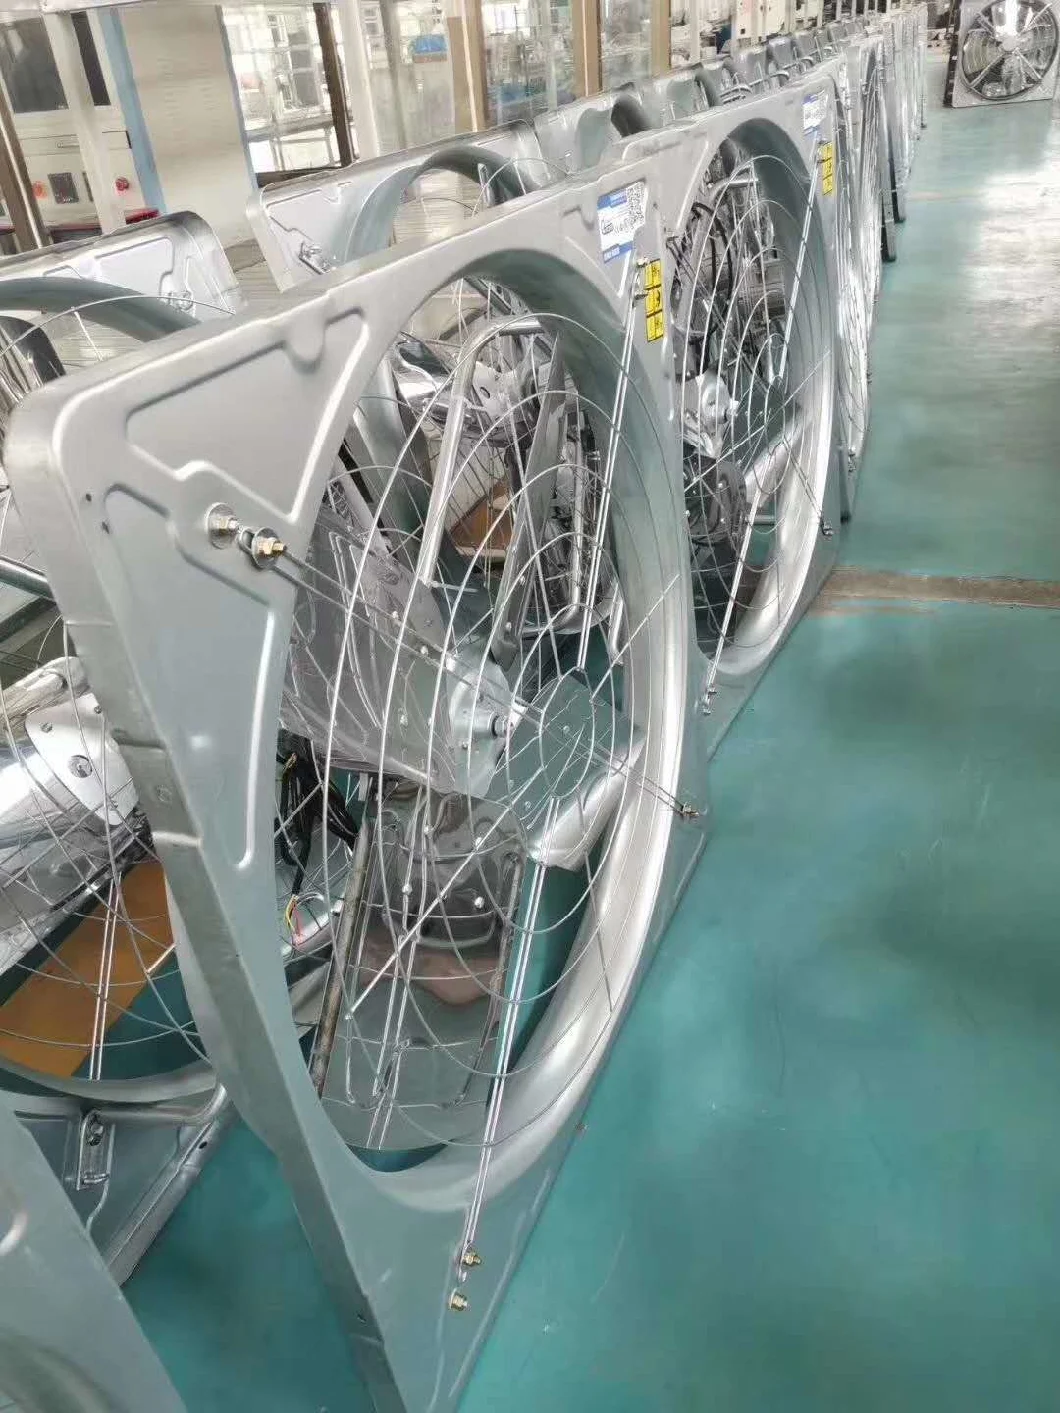 China Mixed Air Flow Fan Factory Hanging Circulation Exhaust Fan